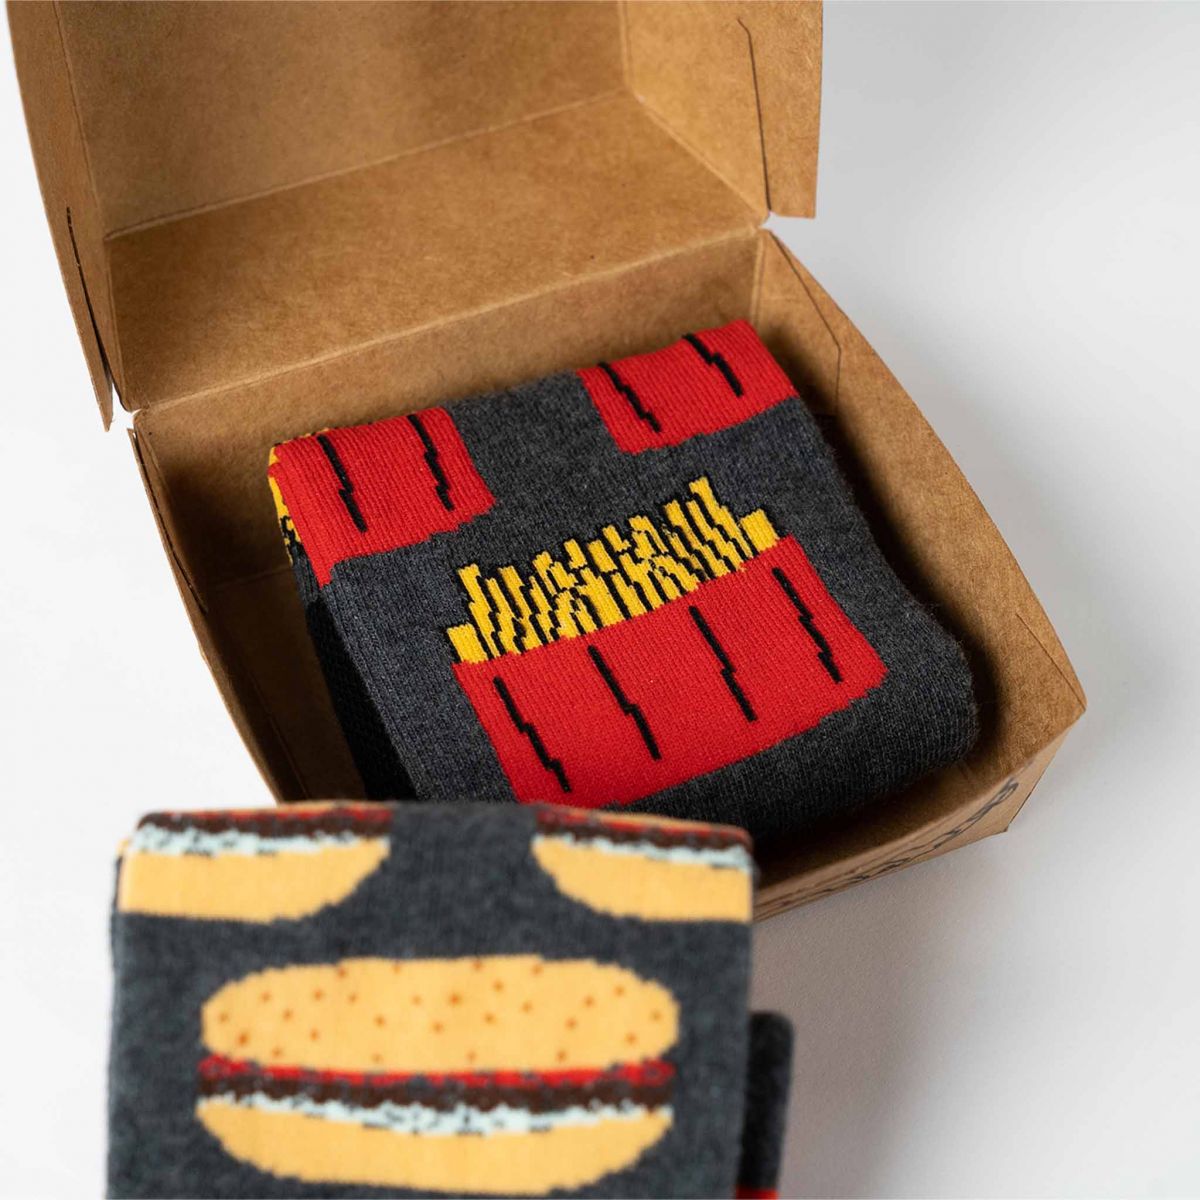 Skarpety - Hamburger + frytki - 2 pary w pudełku upominkowym tp4